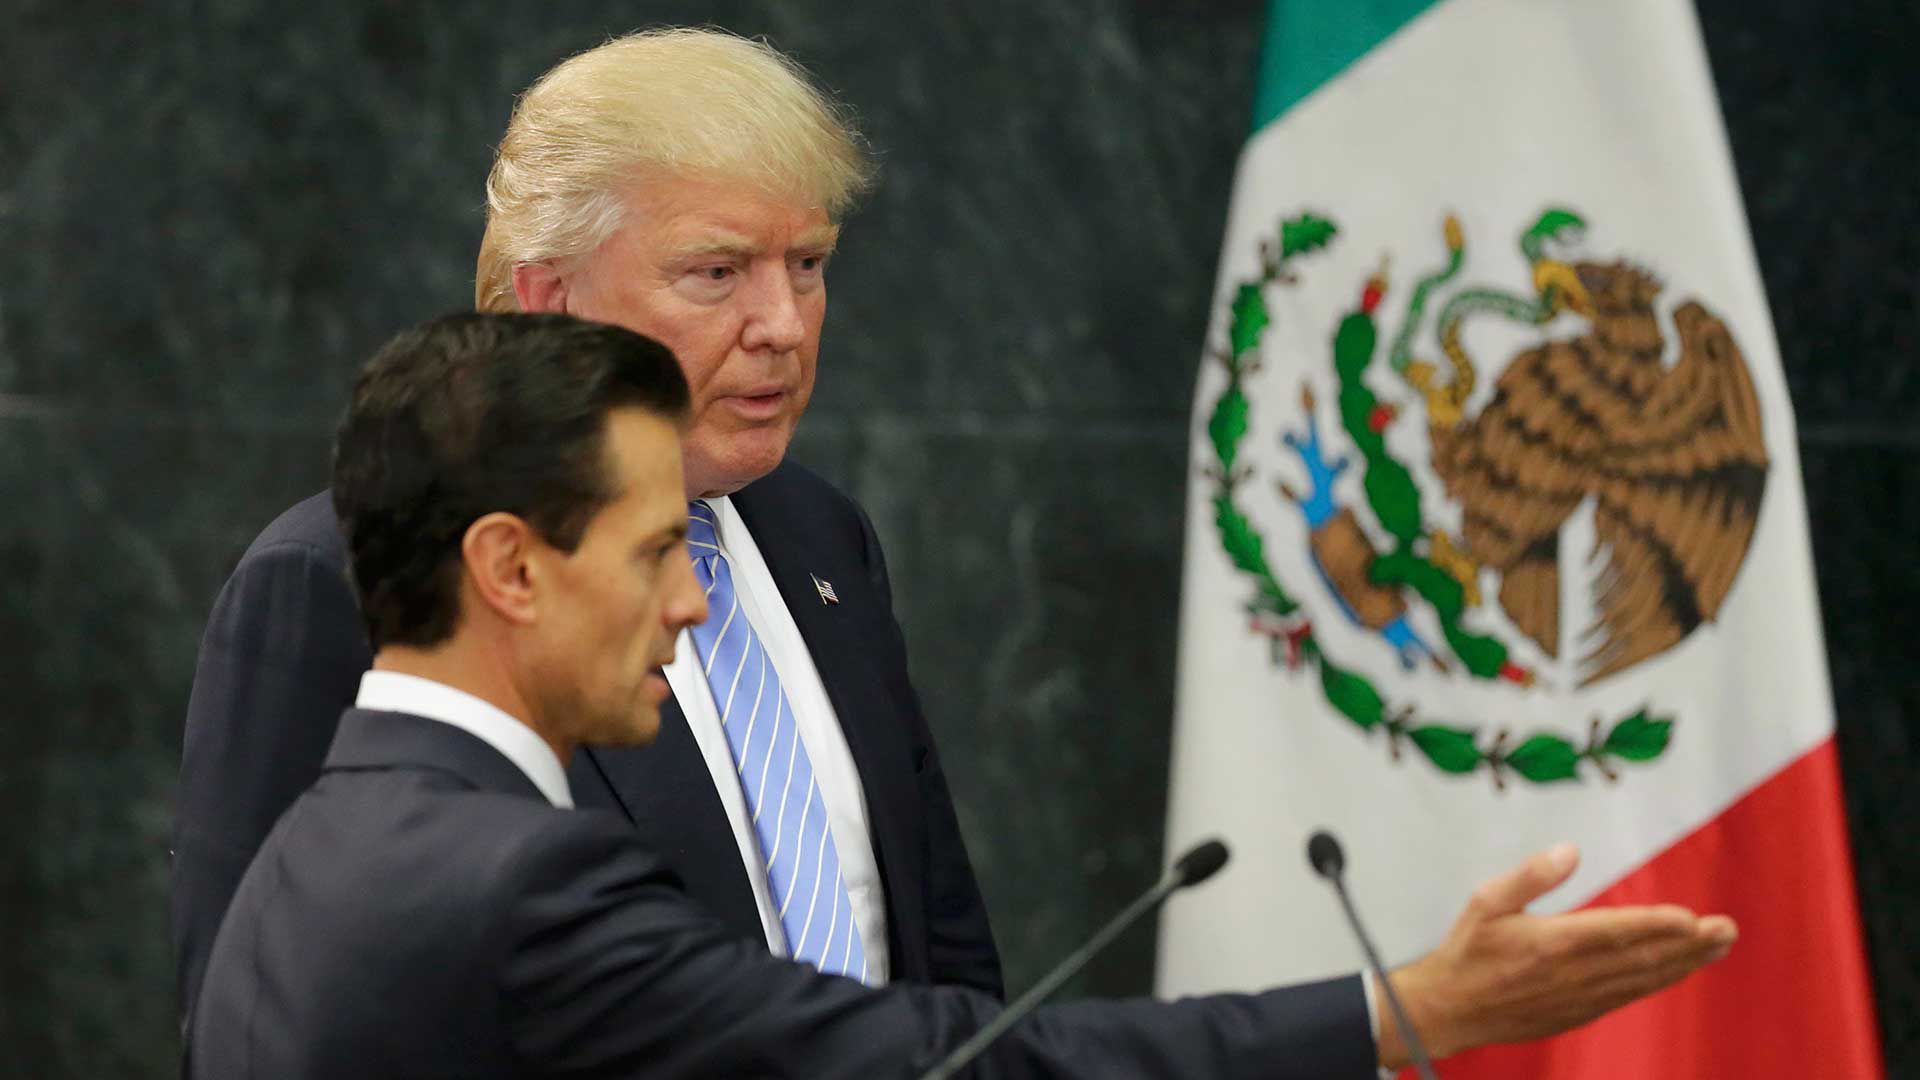 El mandatario Donald Trump durante su visita al entonces presidente Enrique Peña Nieto (Foto: Reuters)